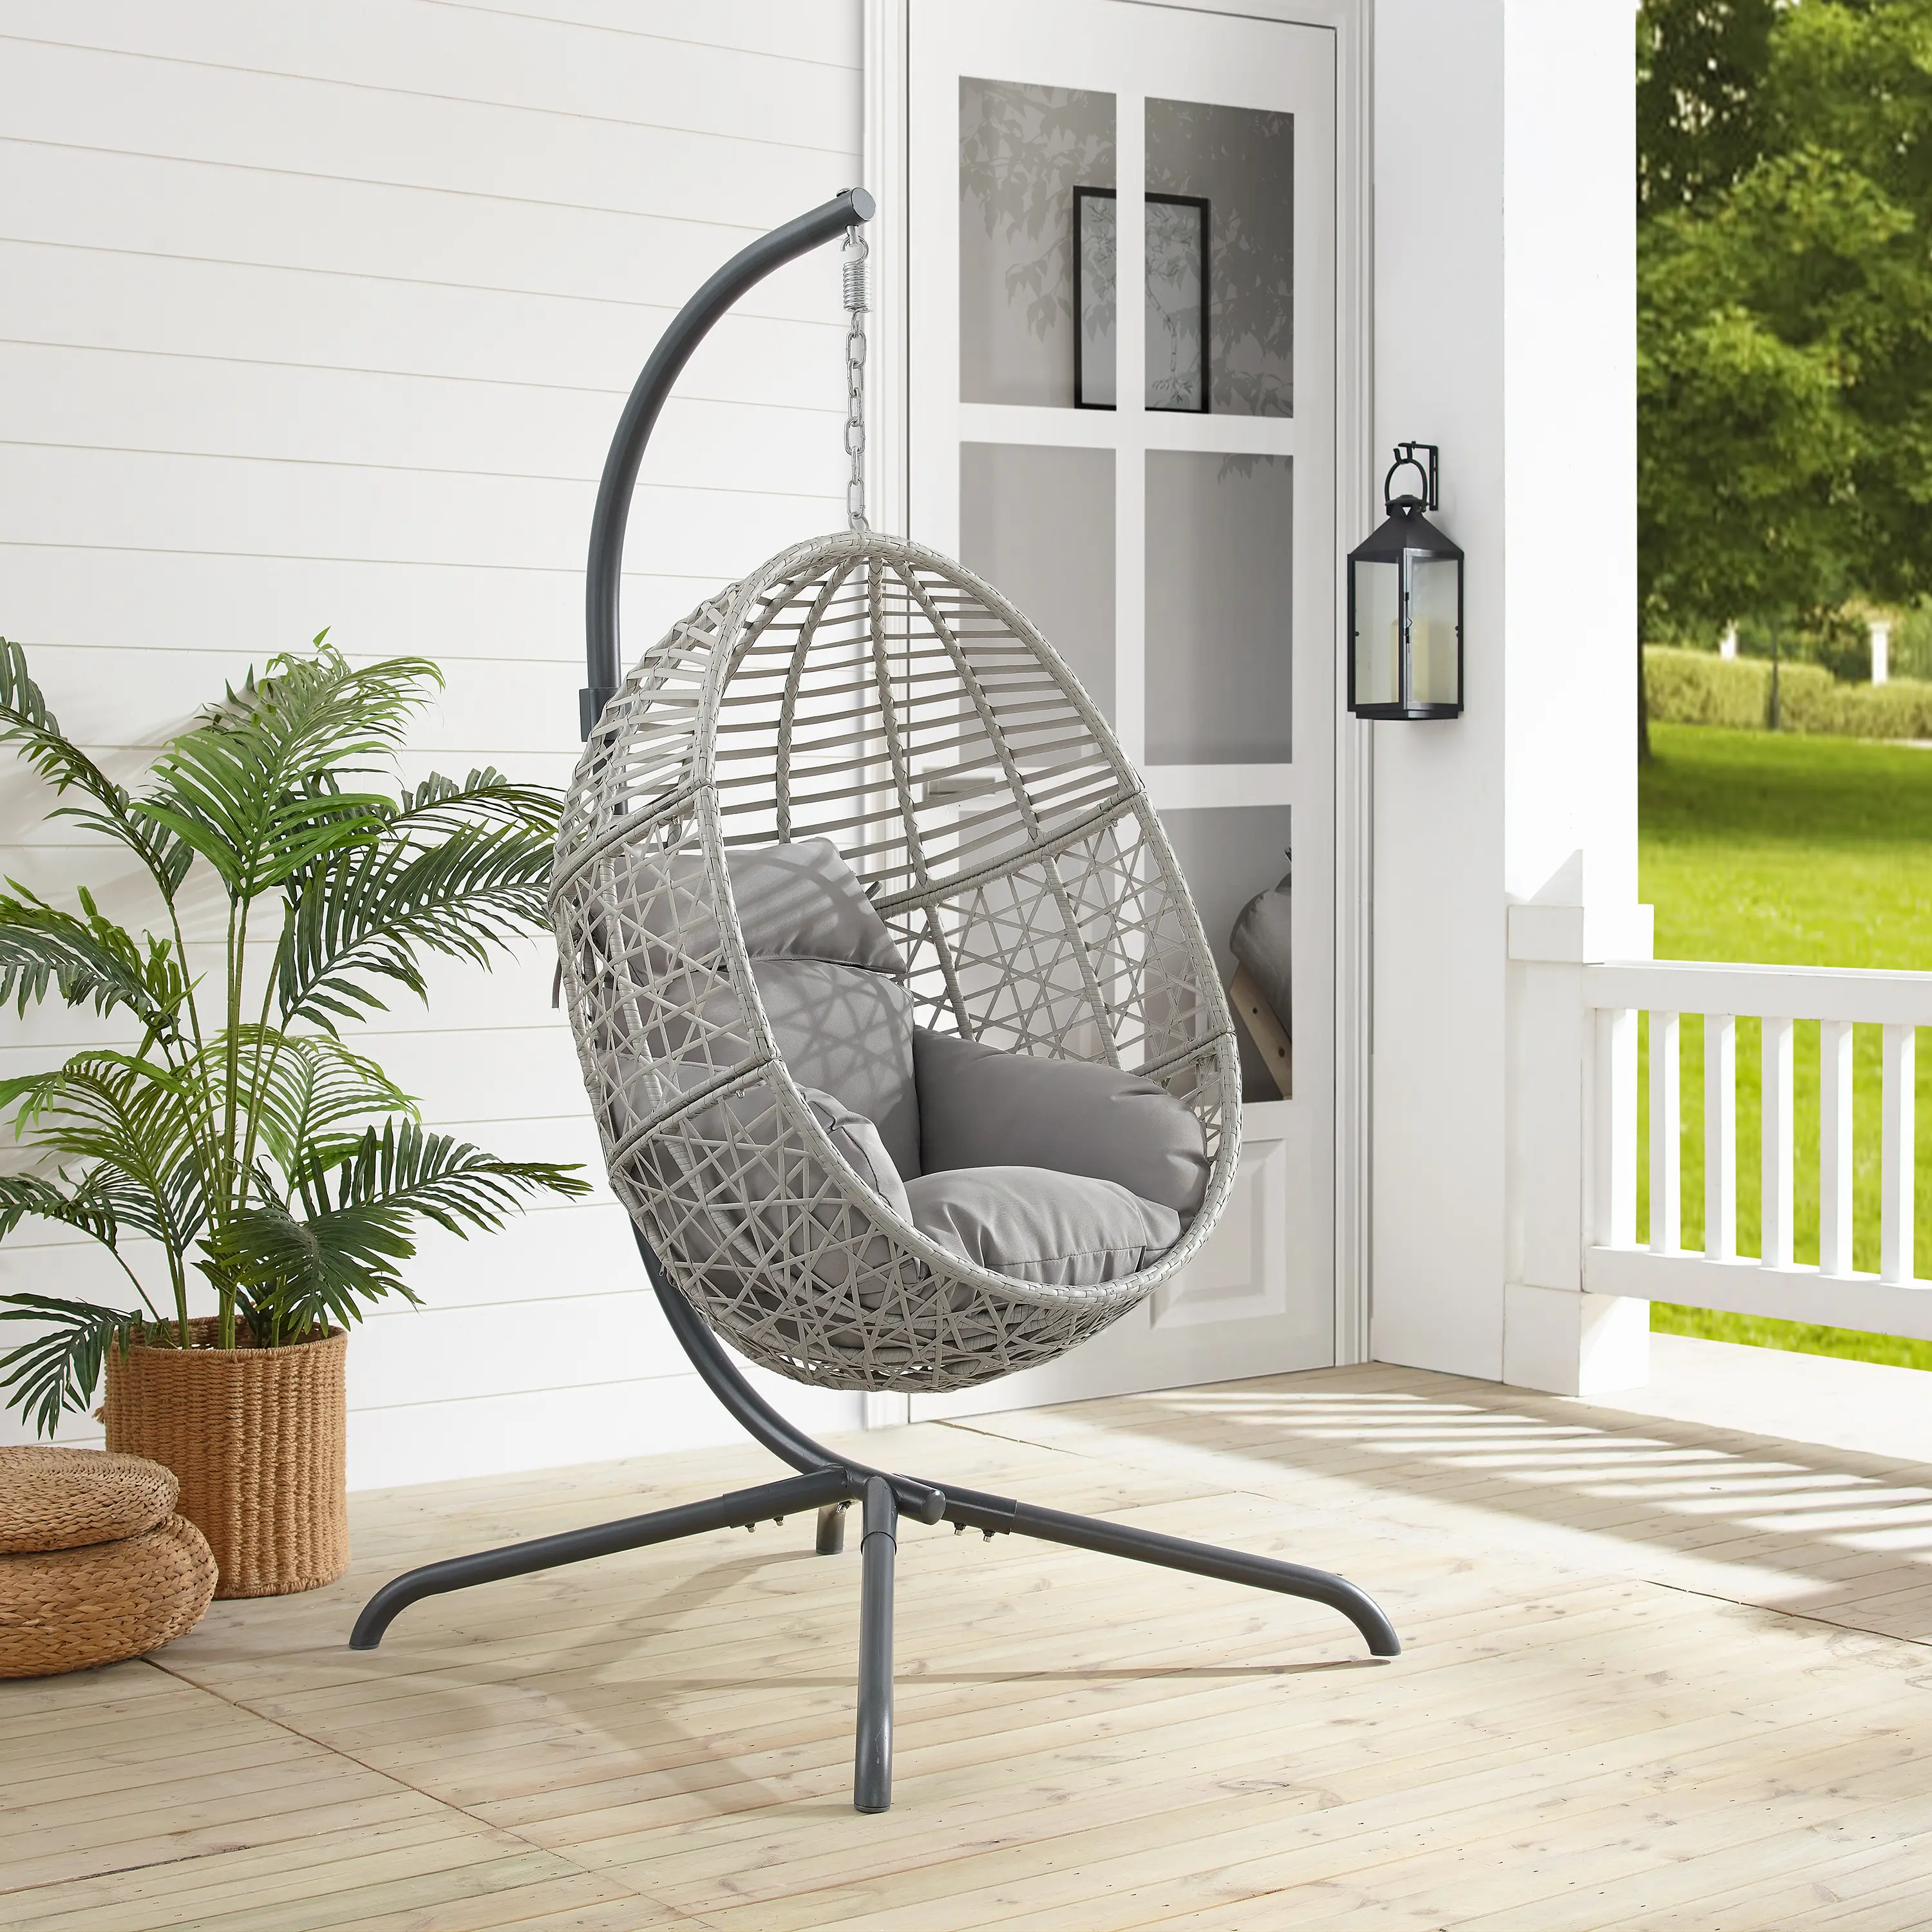 Photos - Garden Furniture Crosley Lorelei Indoor/Outdoor Wicker Hanging Egg Chair KO70232LG 